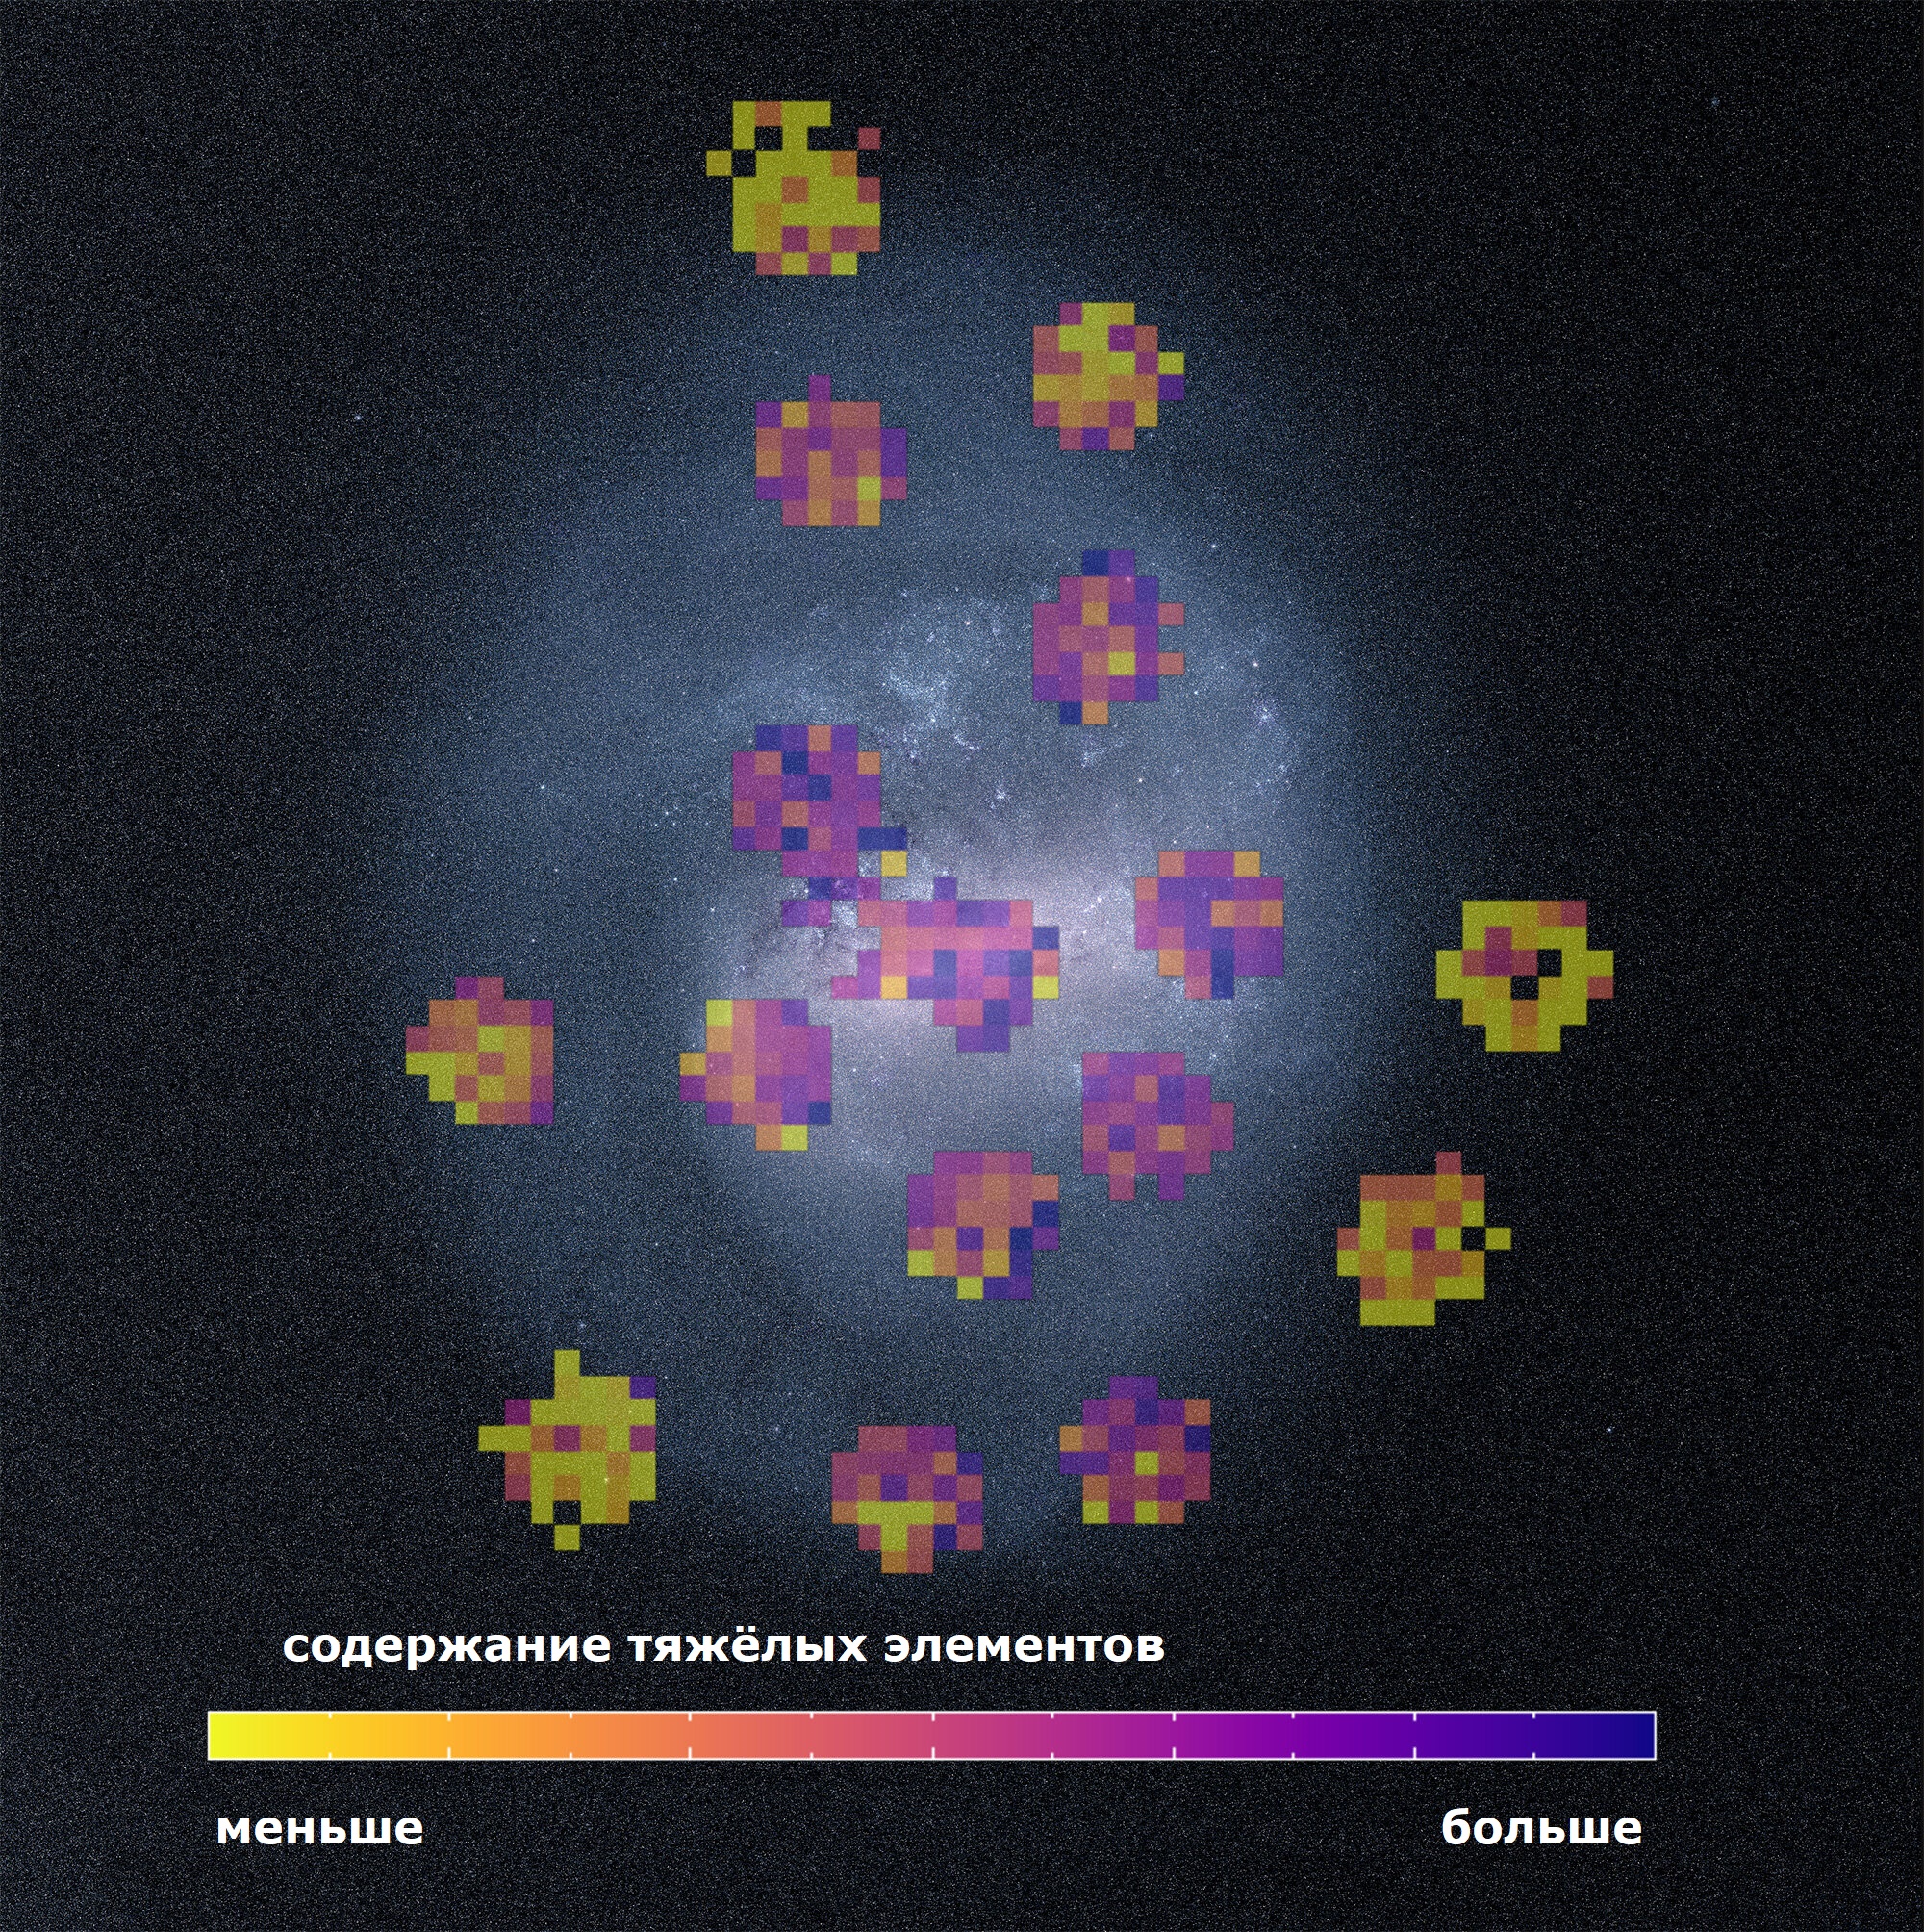 Создана подробная химическая карта других галактик